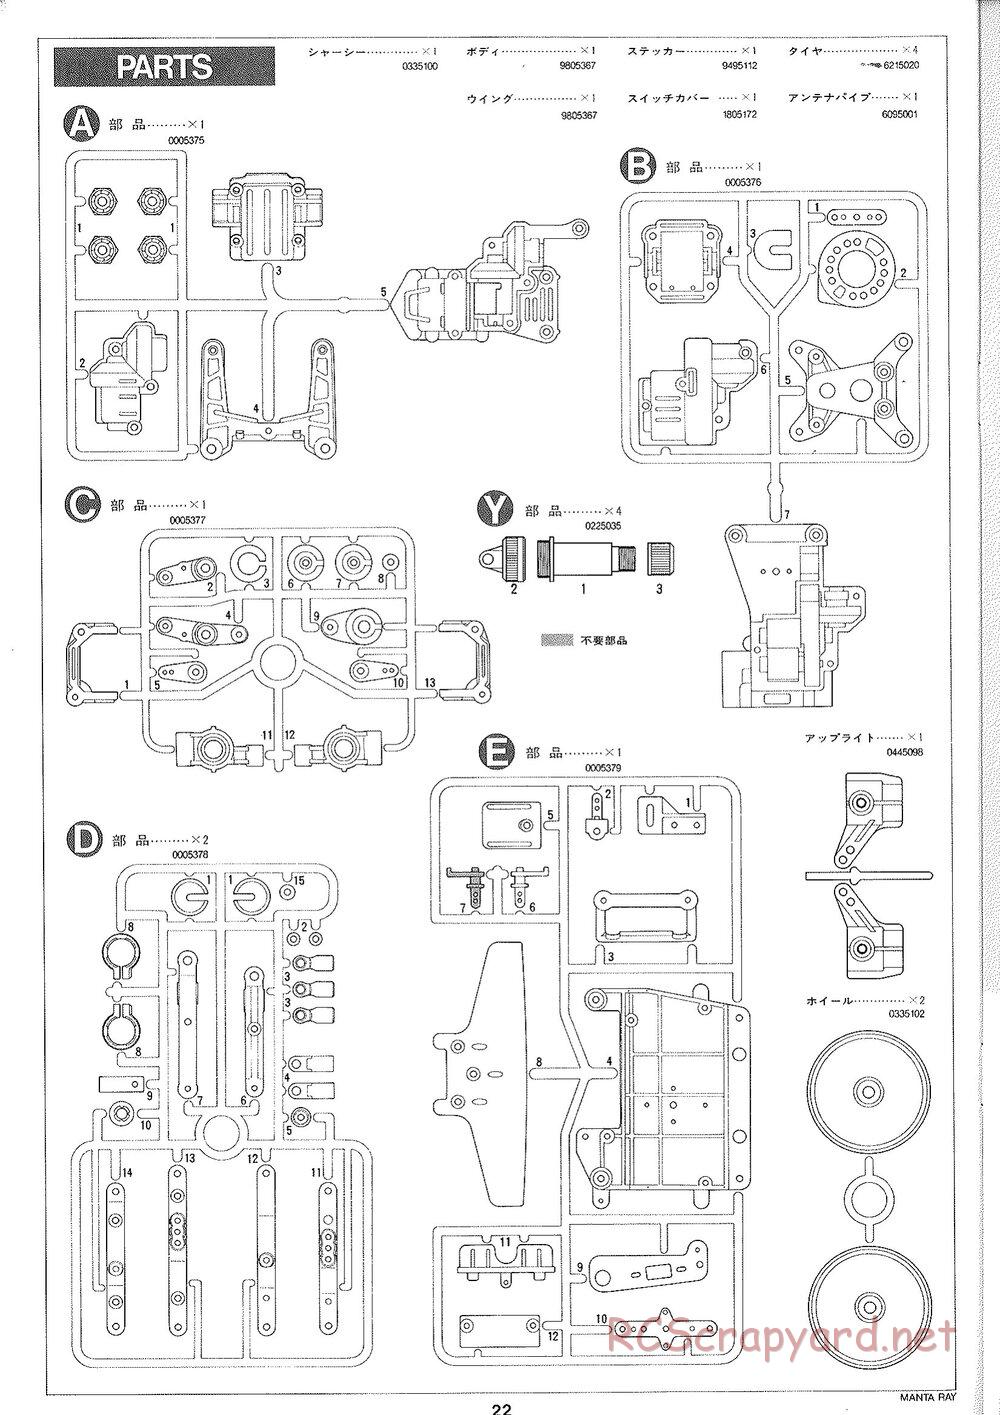 Tamiya - Manta Ray 2005 - DF-01 Chassis - Manual - Page 23